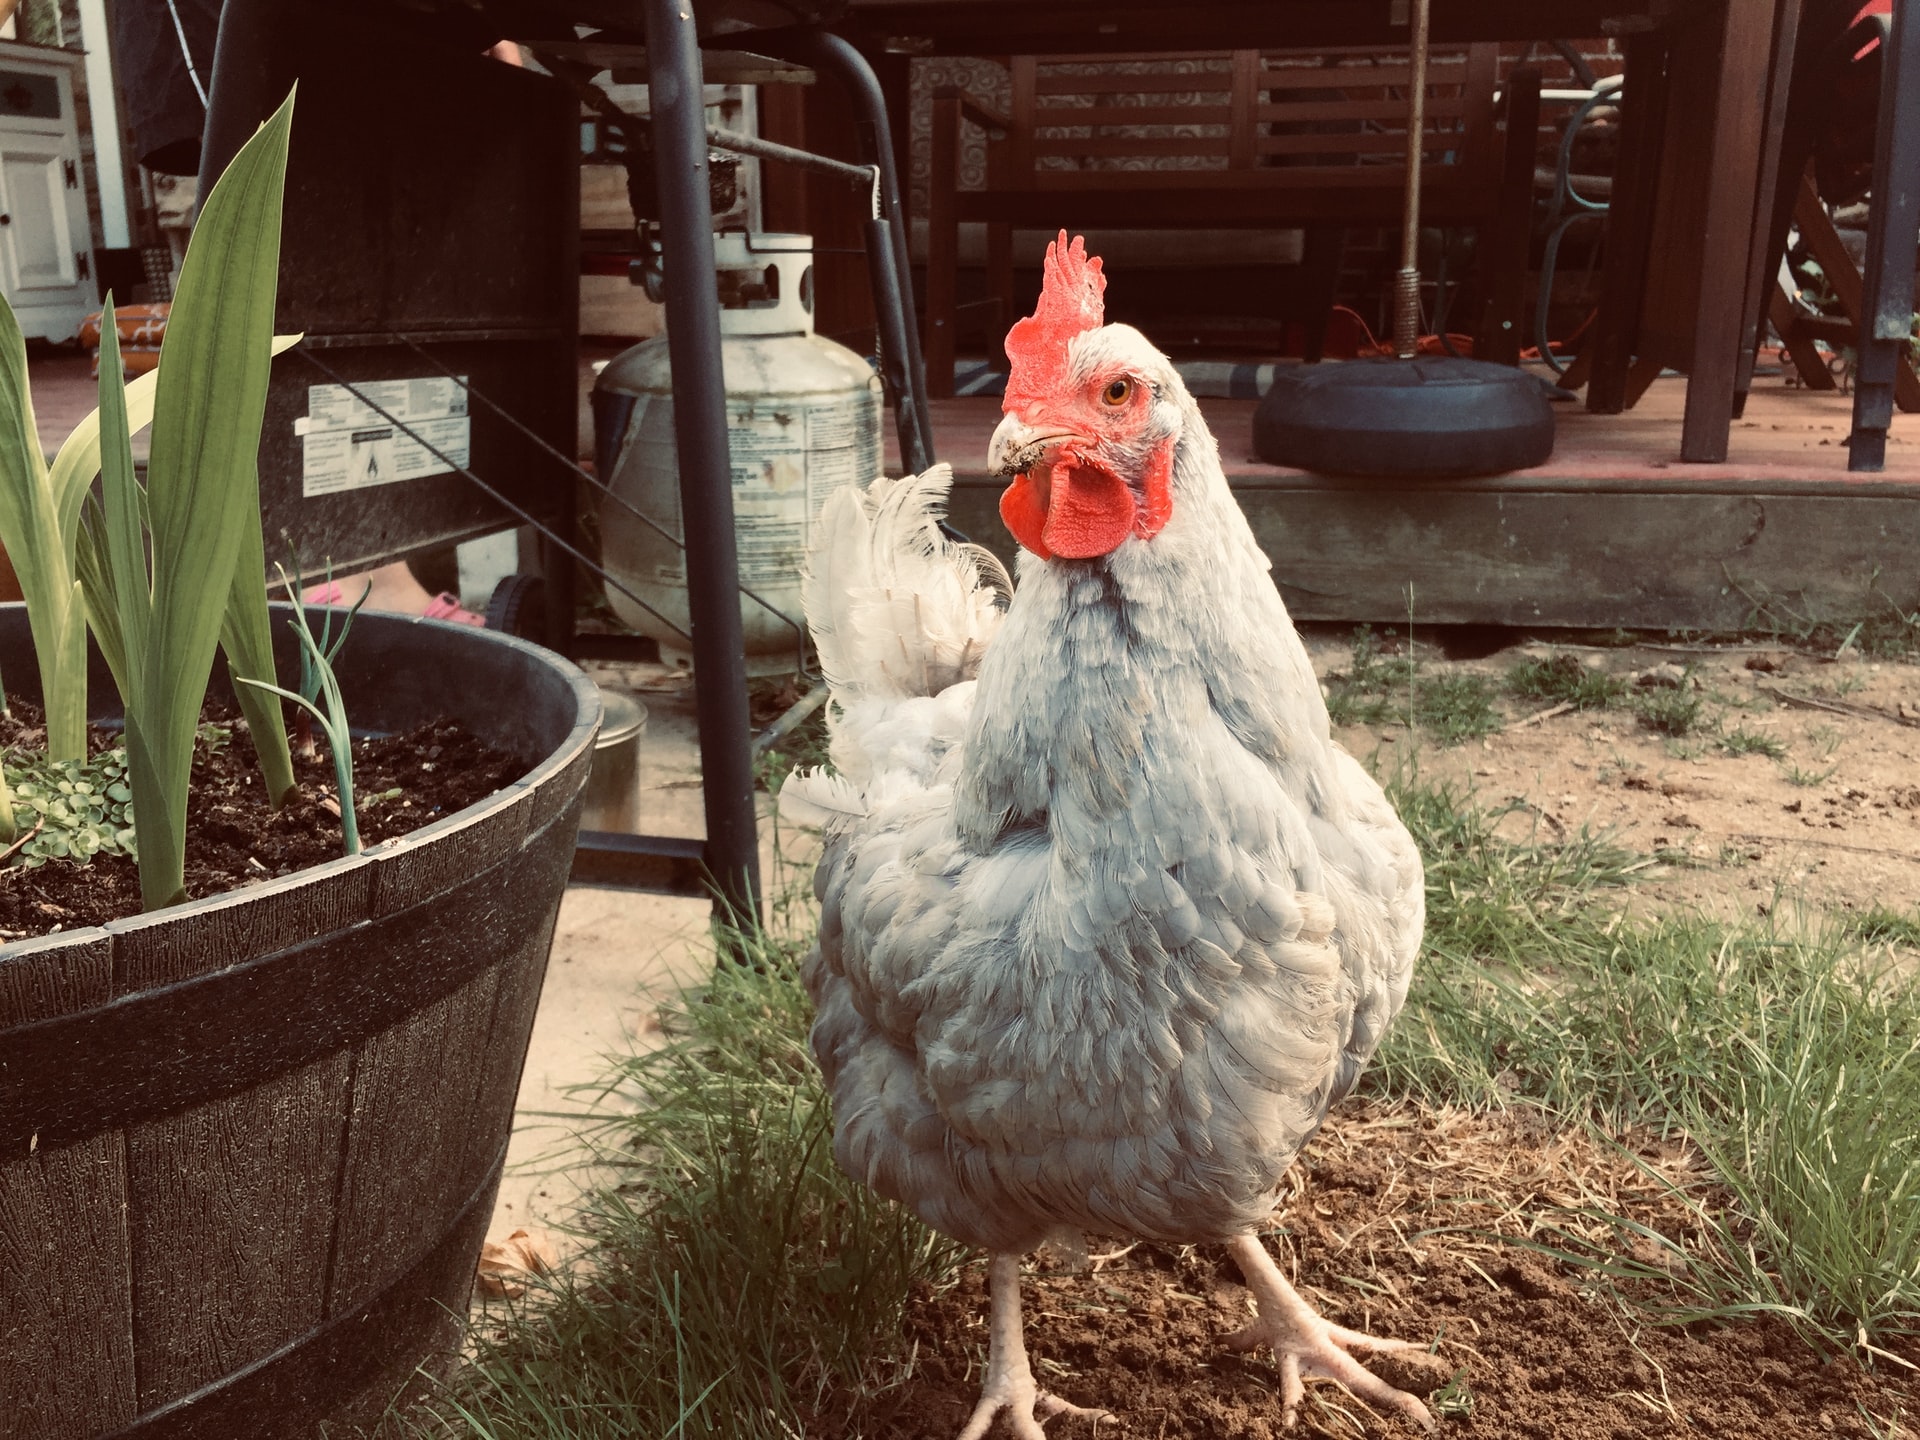 A grey chicken standing in a garden